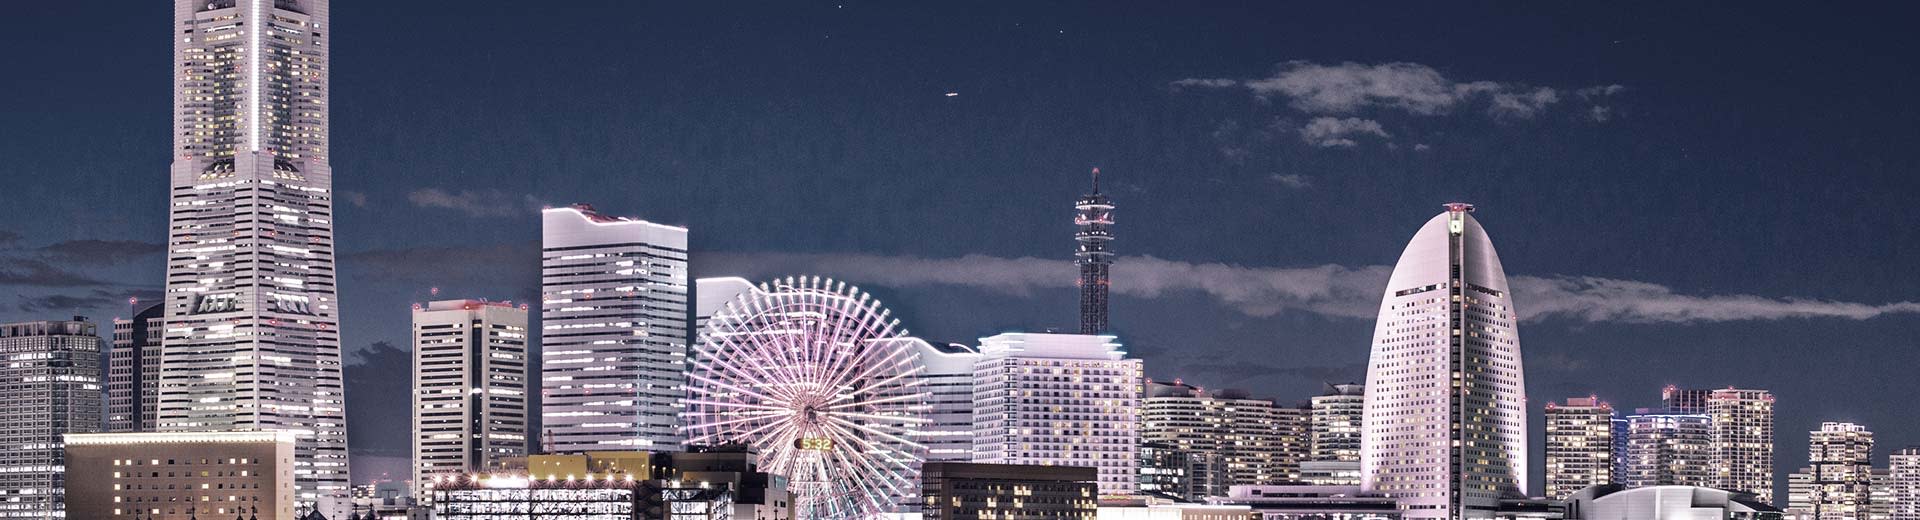 Una fila de rascacielos modernos por la noche en Yokohama se ilumina la oscuridad, con una rueda de la fortuna irreverente en primer plano.